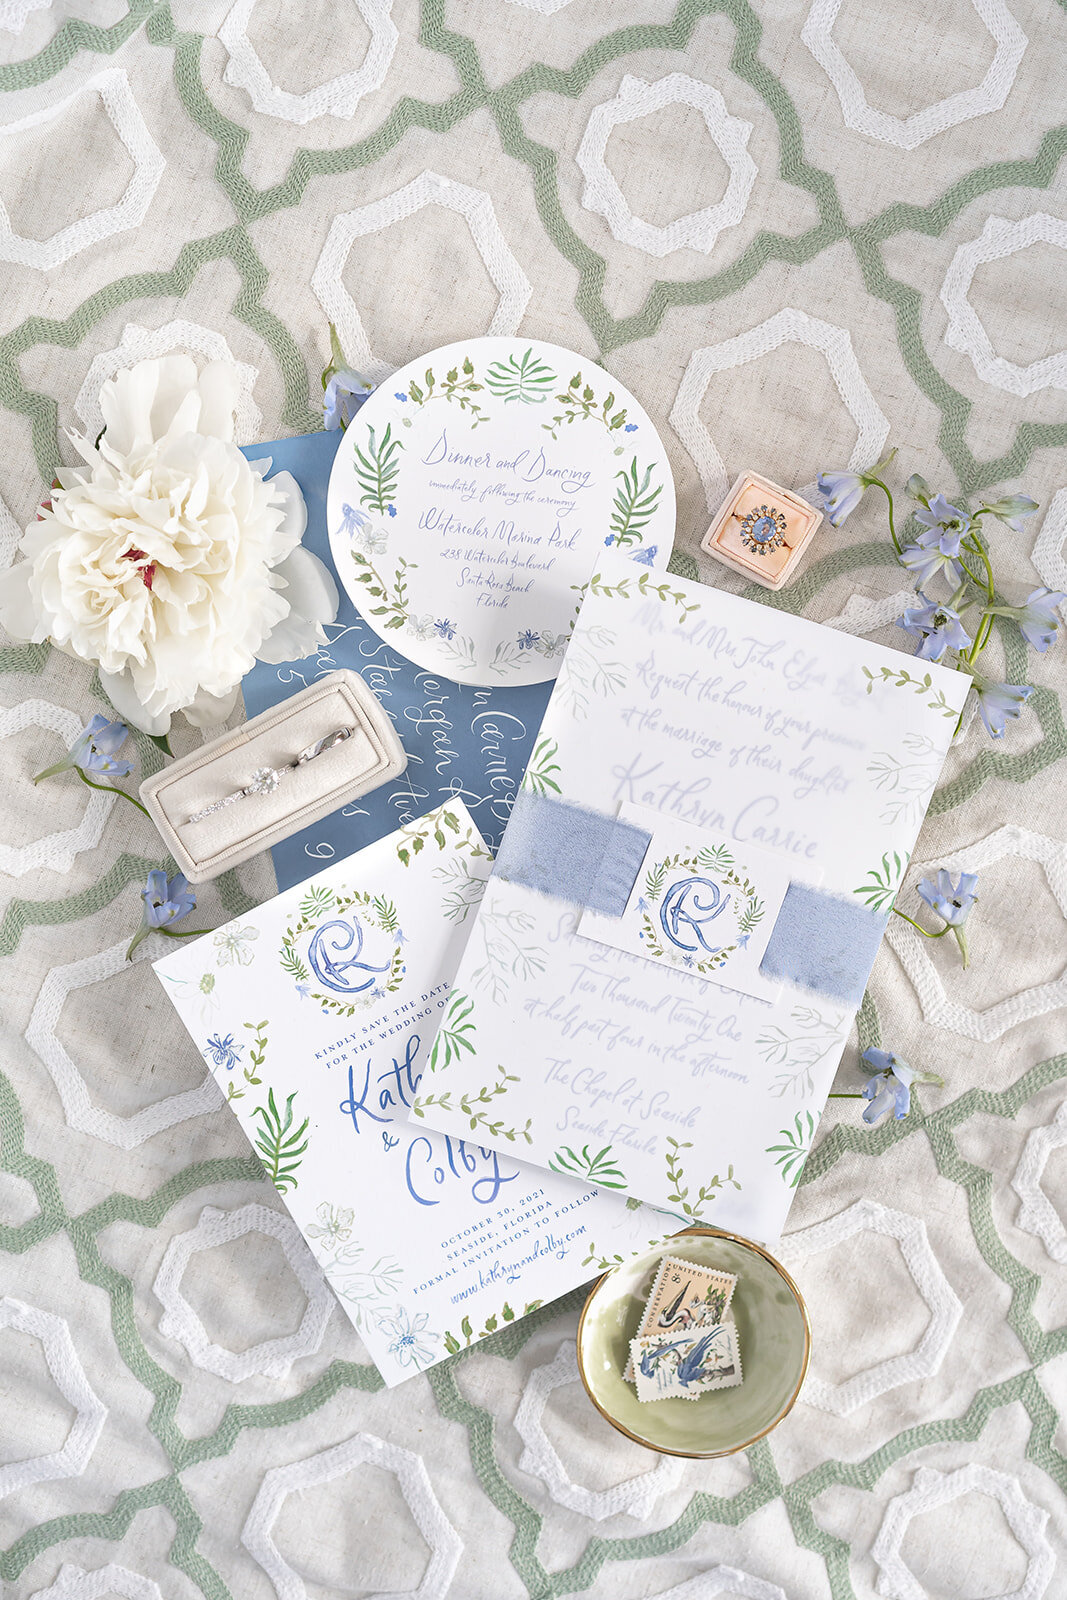 watercolor-wedding-invitation